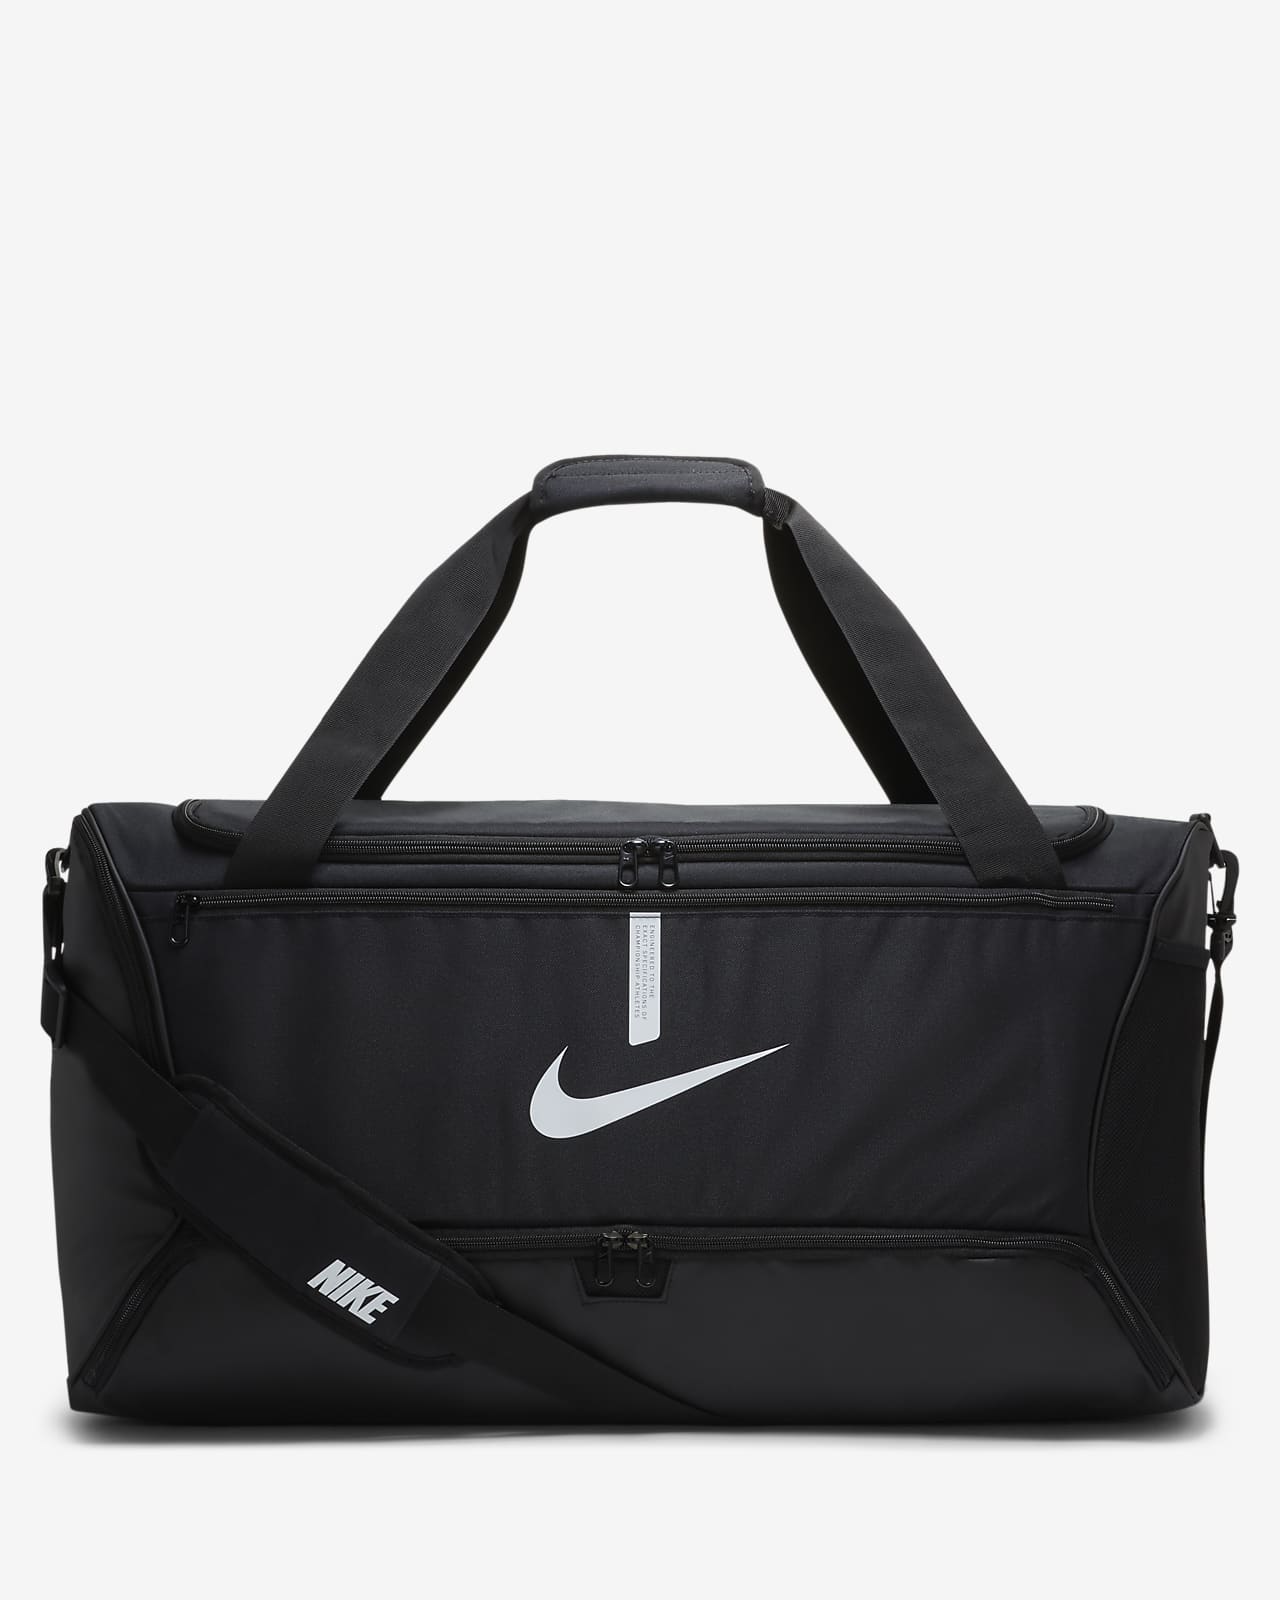 Jernbanestation Husk Henholdsvis Nike Academy Team Football Duffel Bag (Large, 95L). Nike ID